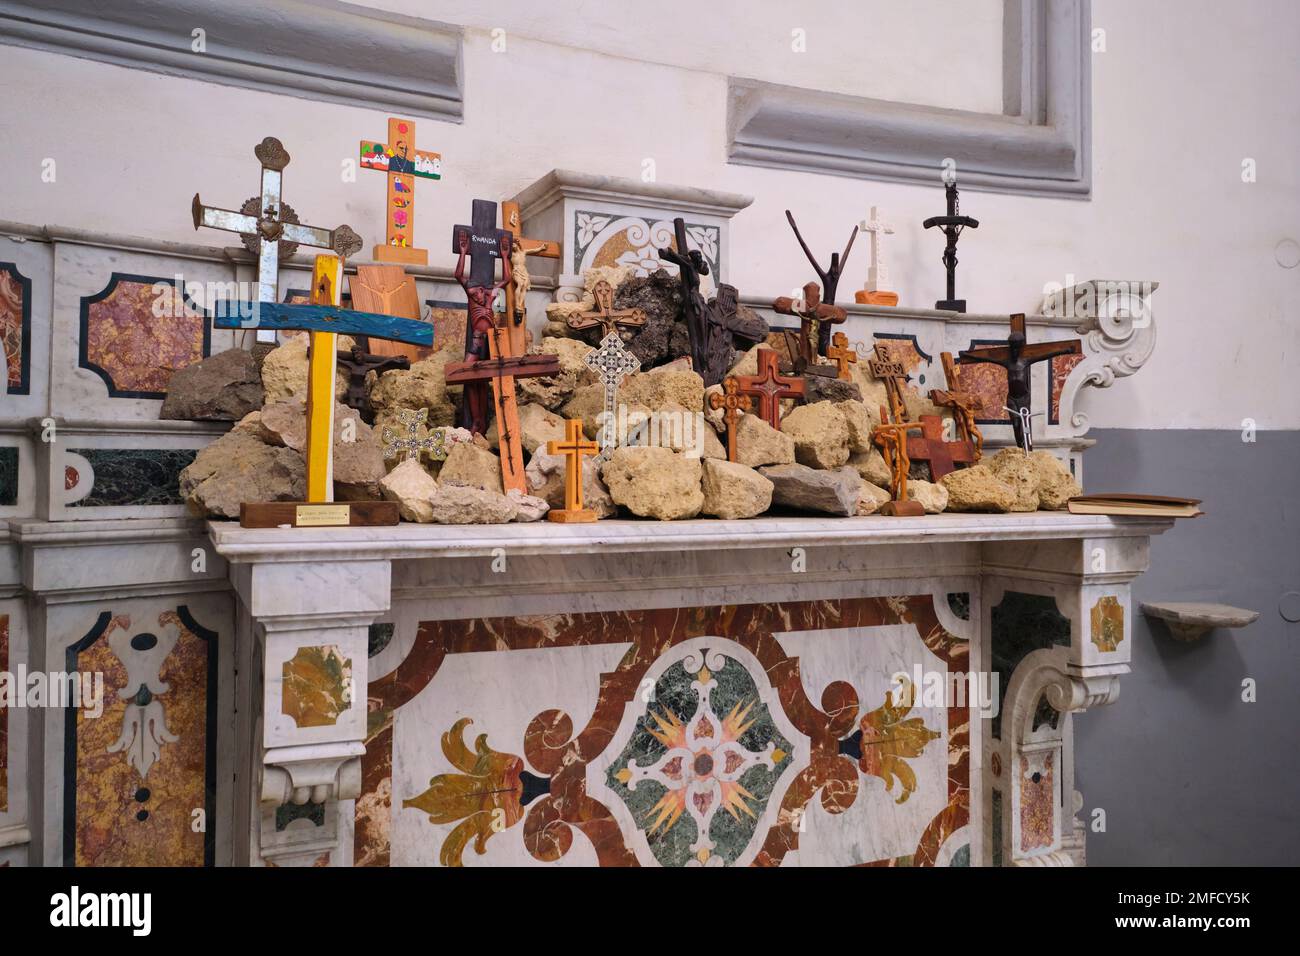 Im Inneren der Kirche befindet sich ein kleiner, hausgemachter, provisorischer Schrein aus Felsen und Holzkreuzen auf einem Mantel. In der katholischen Kirche, Chiesa dei Santo Filippo e Gia Stockfoto